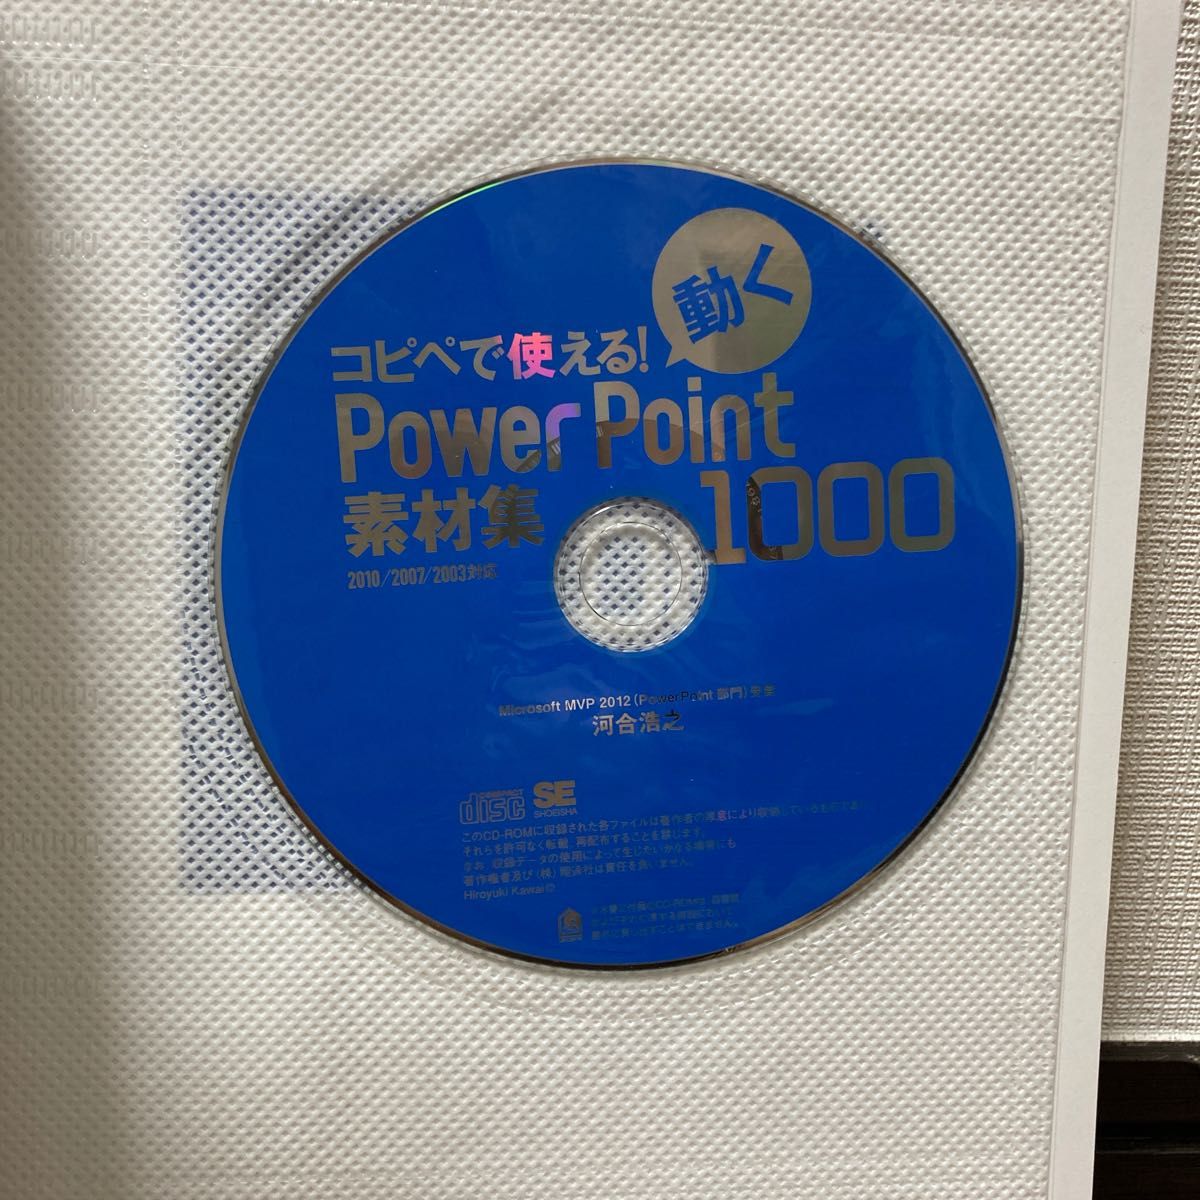 コピペで使える!動くPowerPoint素材集1000 : 2010/2007/2003対応